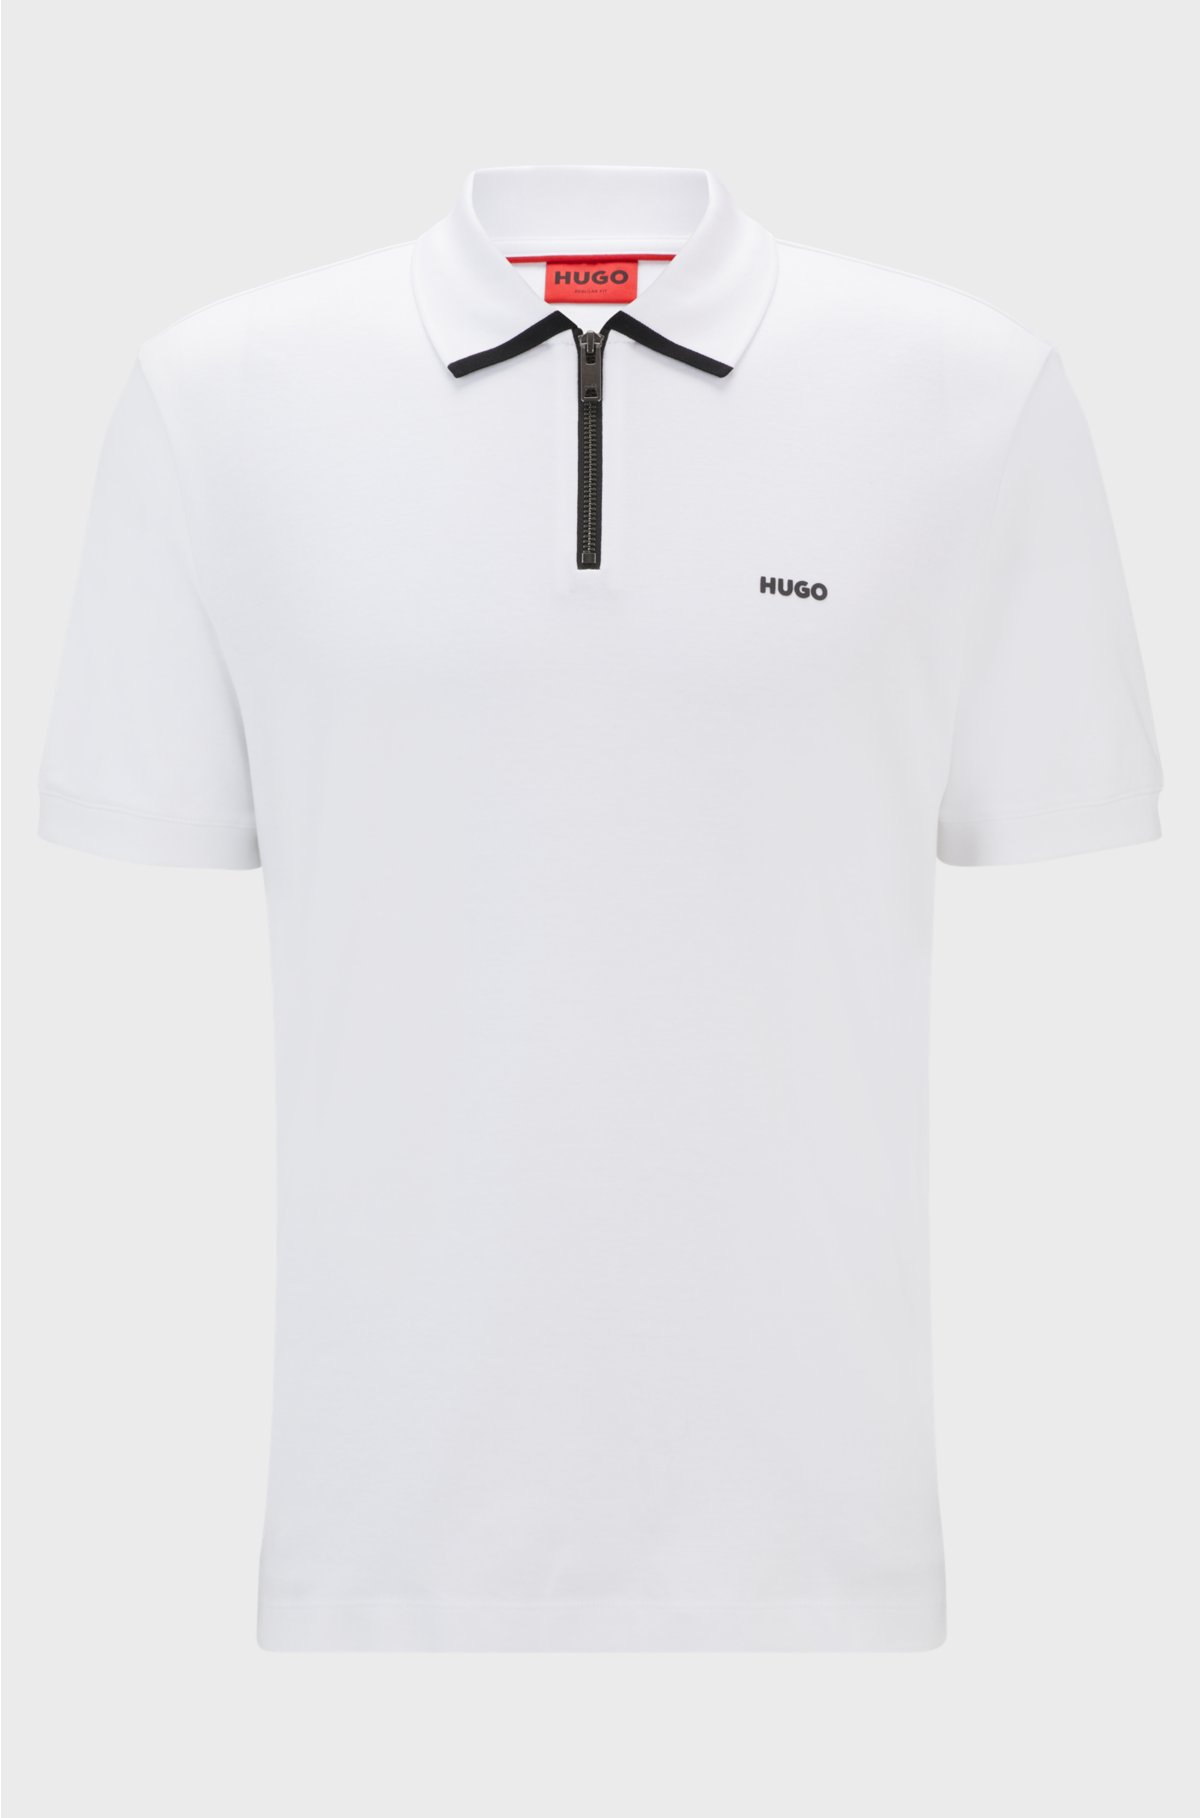 Cotton-piqué polo shirt with contrast logo, White